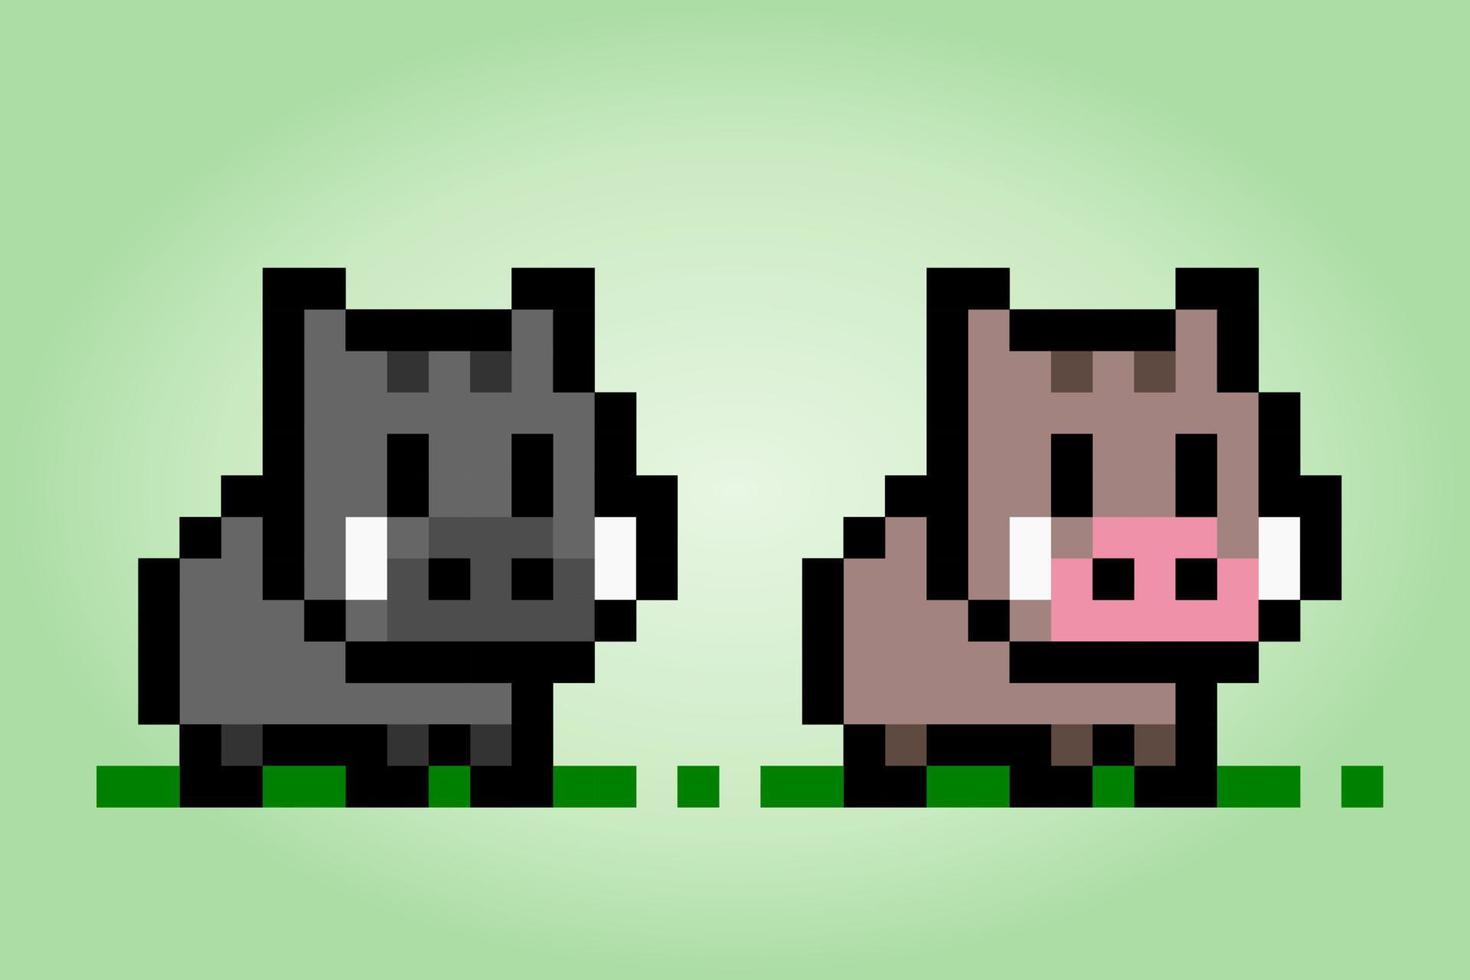 8 bit pixel il cinghiale. pixel di animali nell'illustrazione vettoriale per asset di gioco o motivo a punto croce